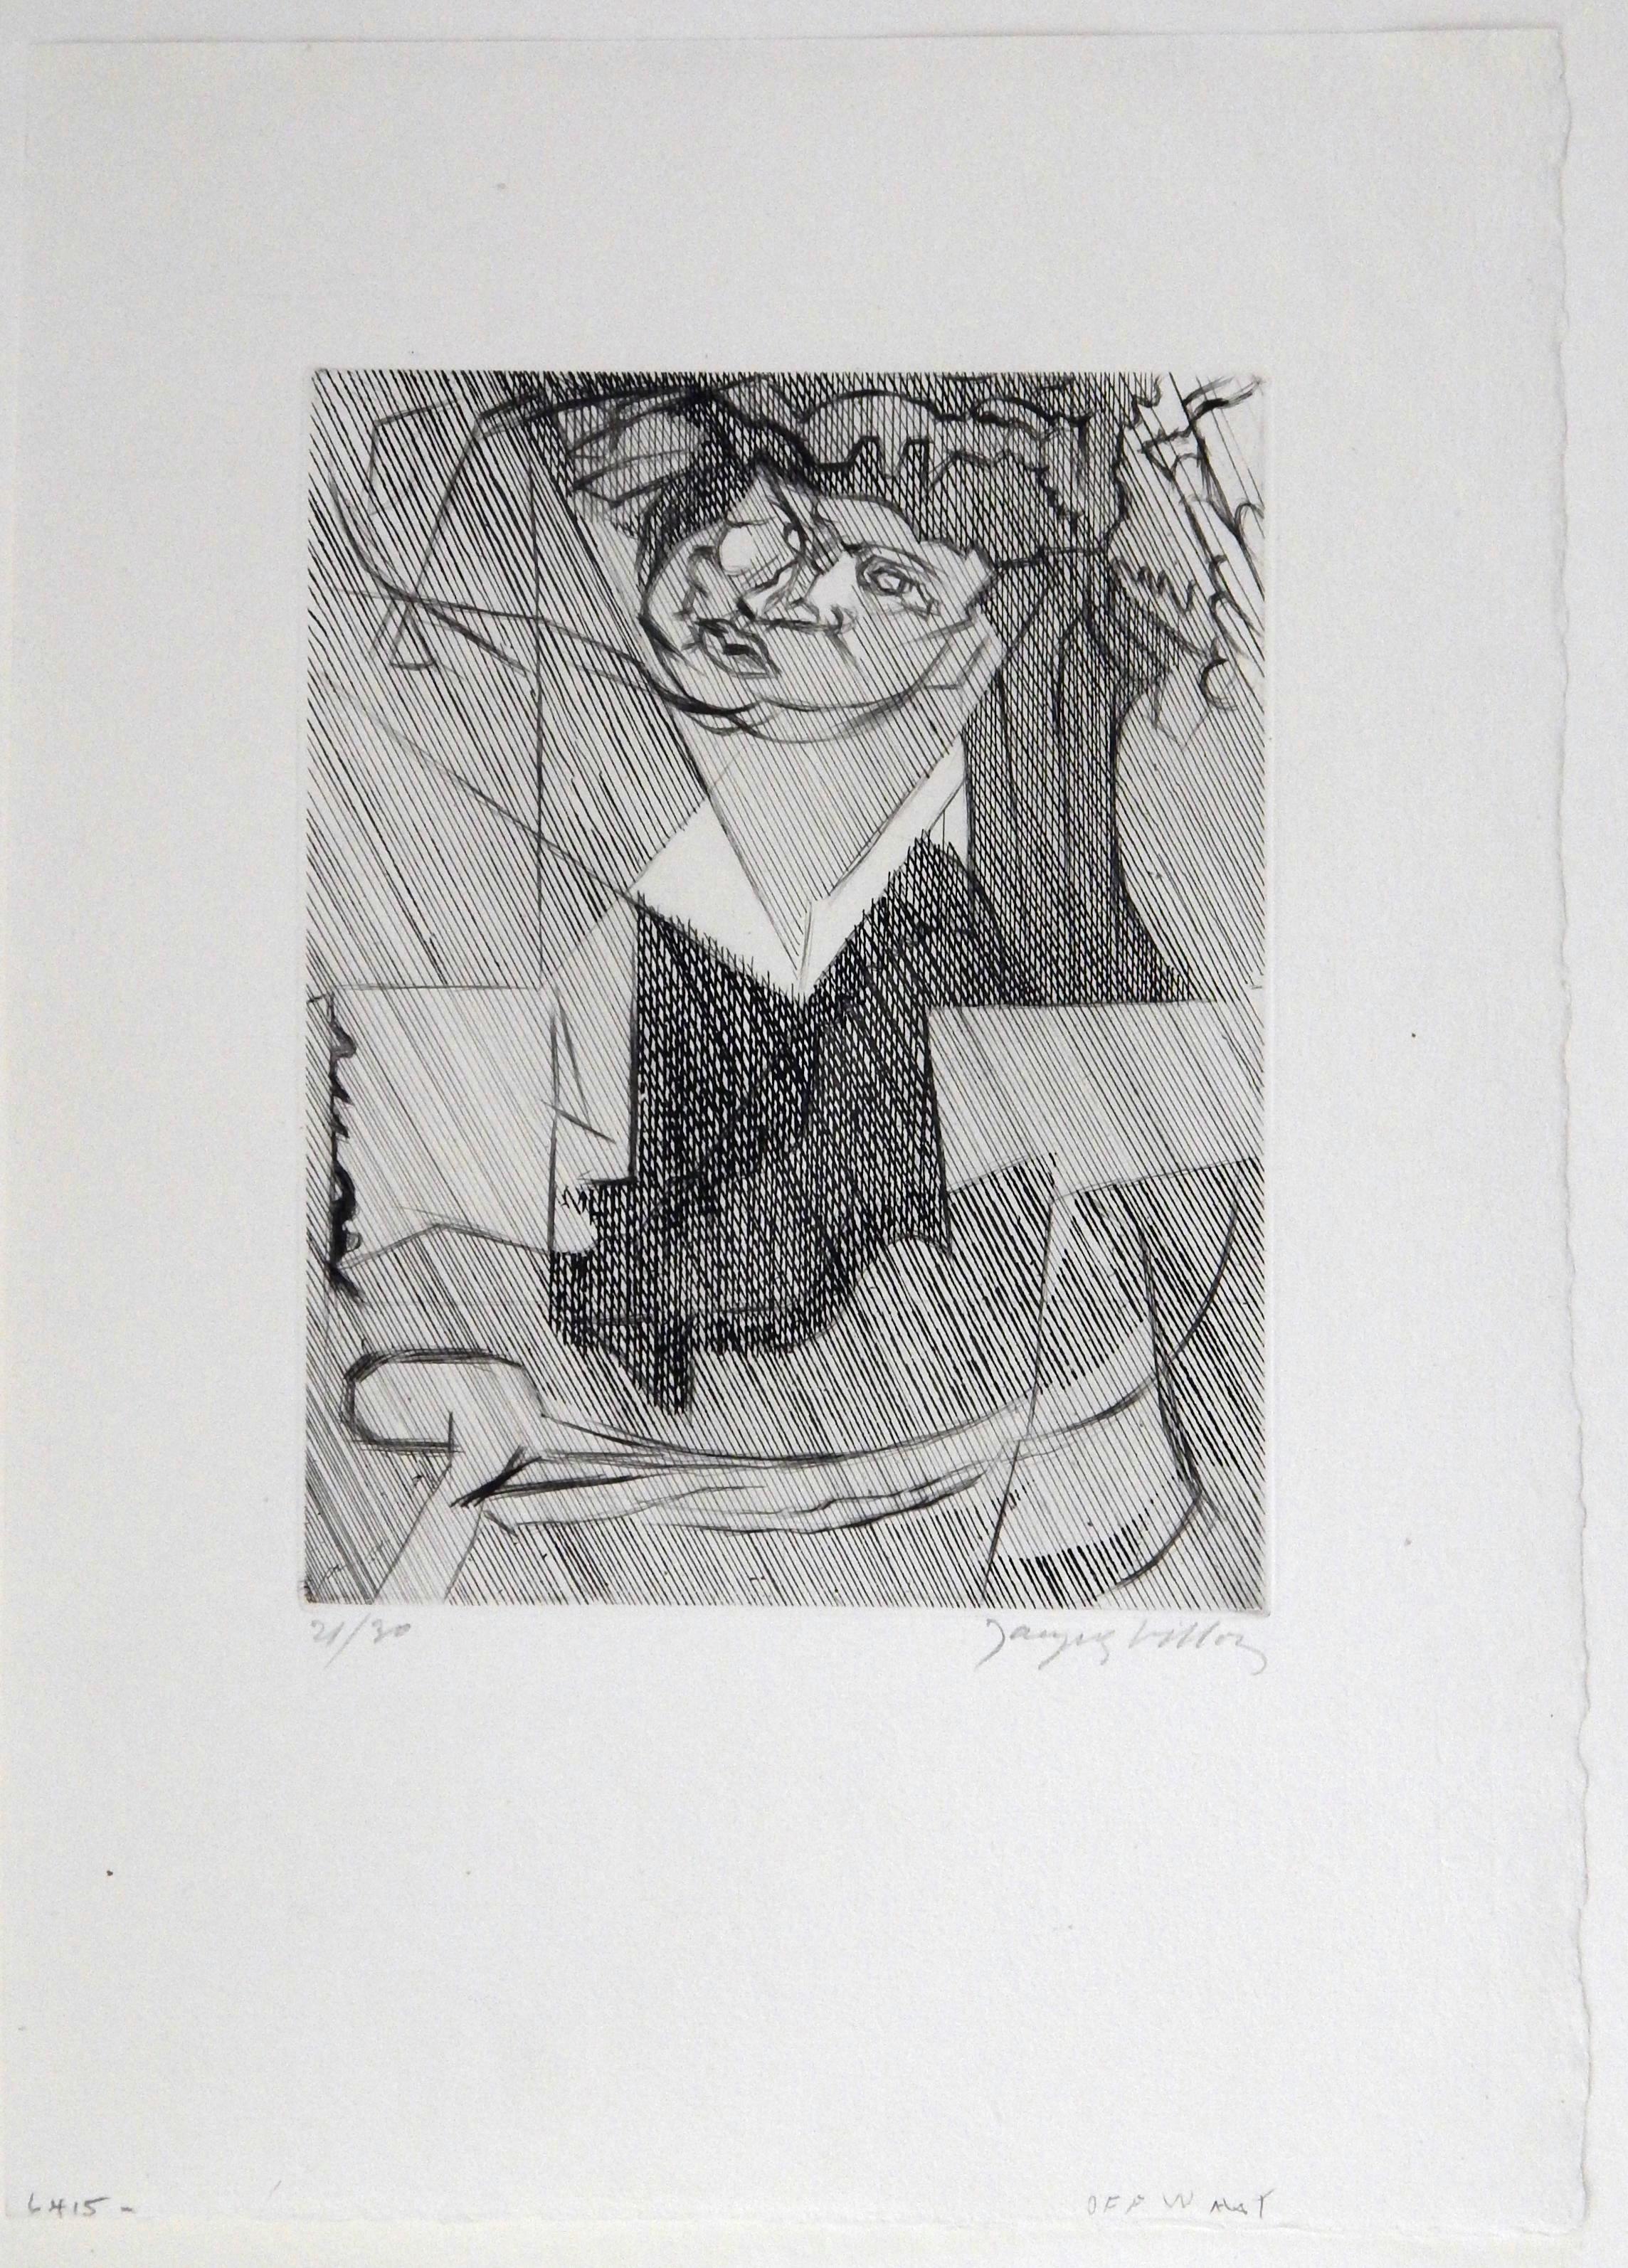 Originalradierung  ZollFigure de Femme Zoll von Jacques Villon im kubistisch-surrealen Stil.
Handsigniert und nummeriert. Kleine Auflage, aus dem Jahr 1951.
Auflage von 30 Stück, dieser Druck ist die Nr. 21. Unmattiert und ungerahmt.
Maße: 9 3/4